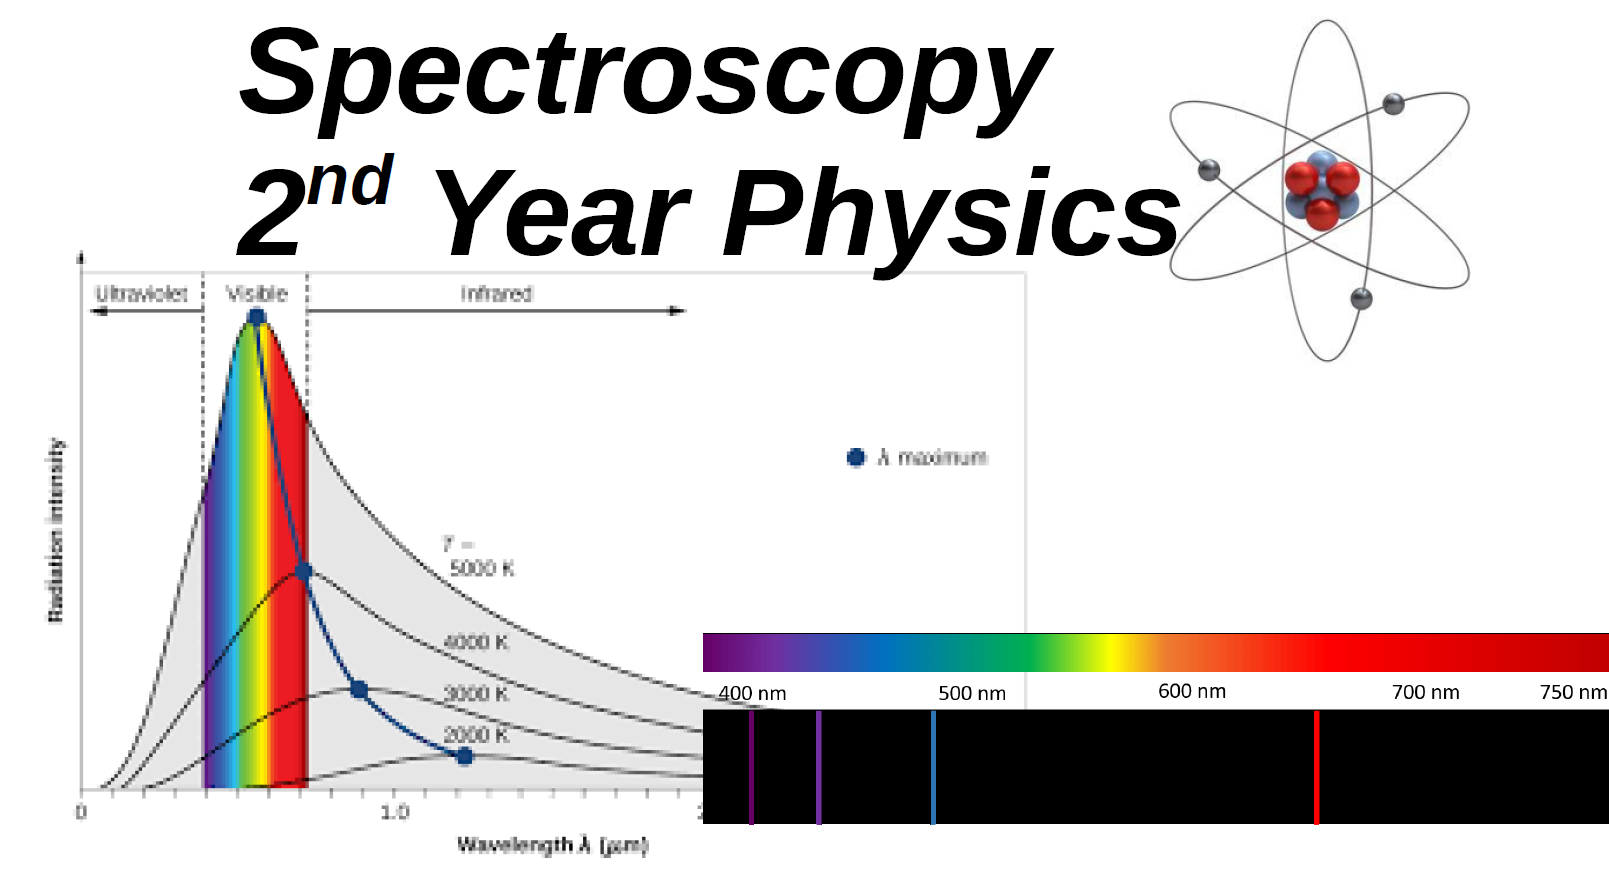 Spectroscopy 
